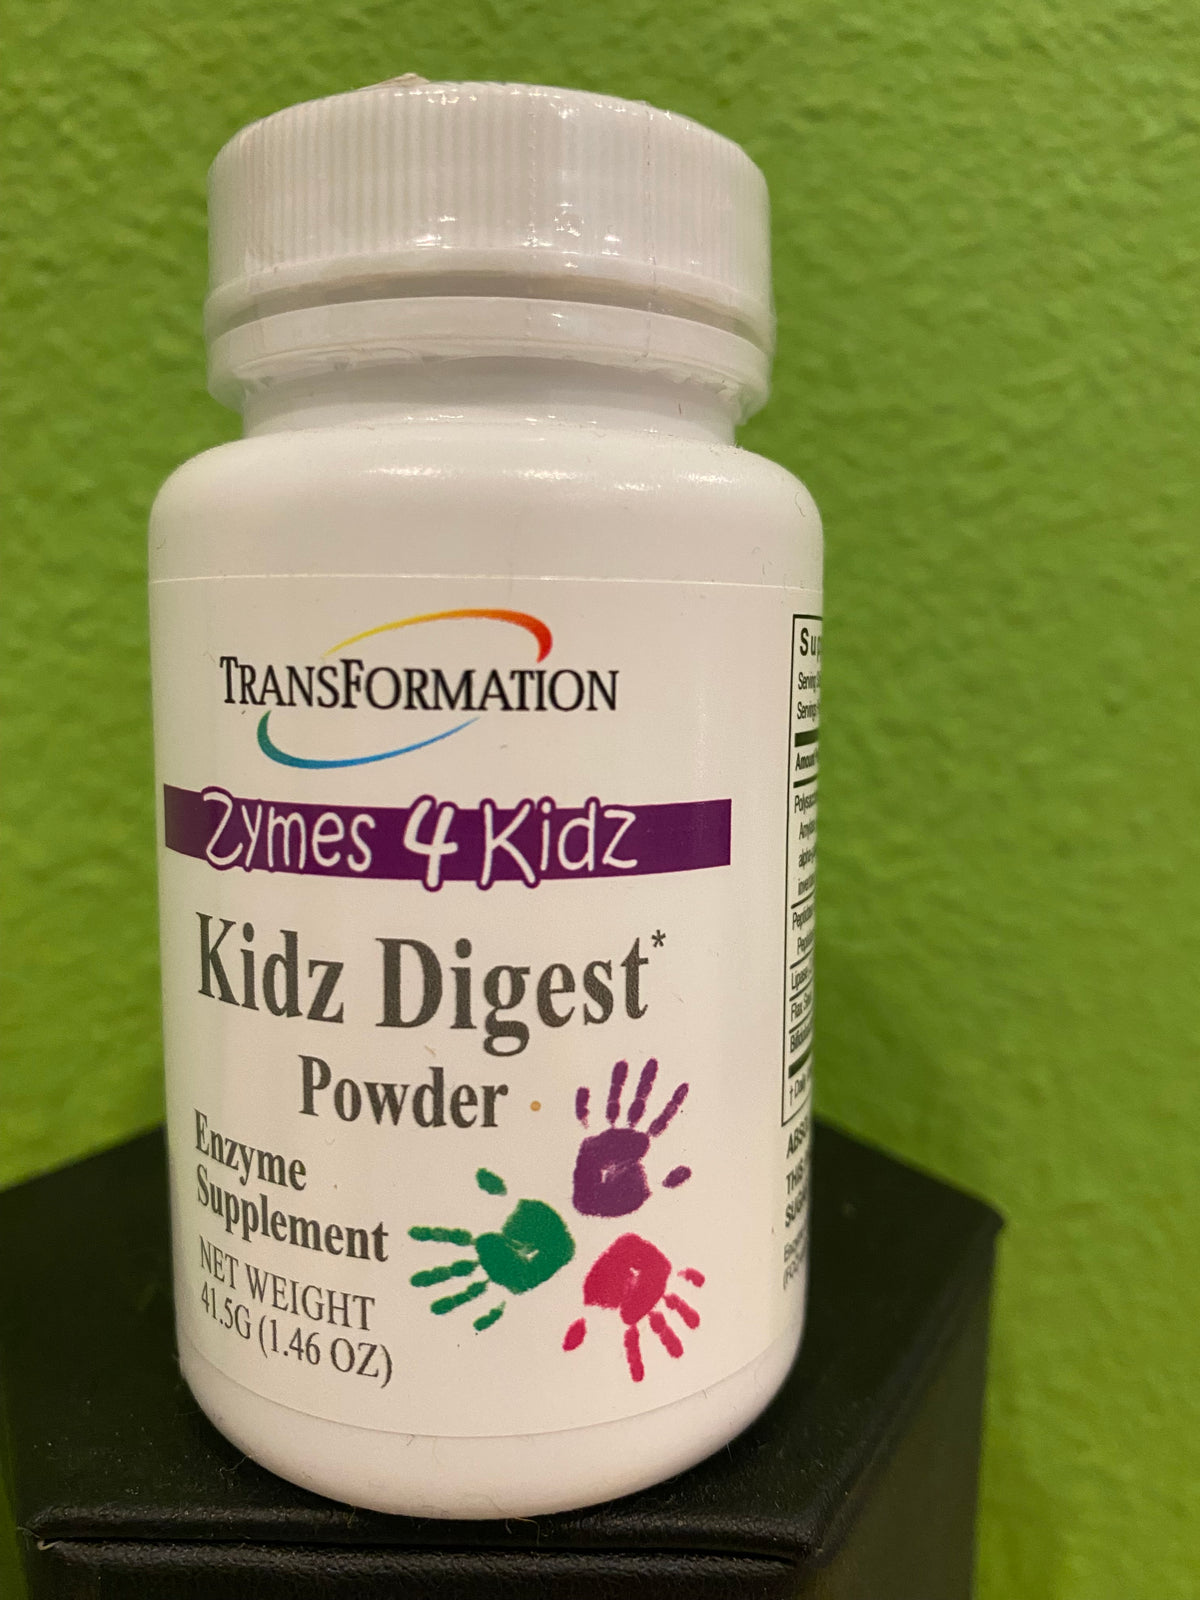 Kidz Digest Powder